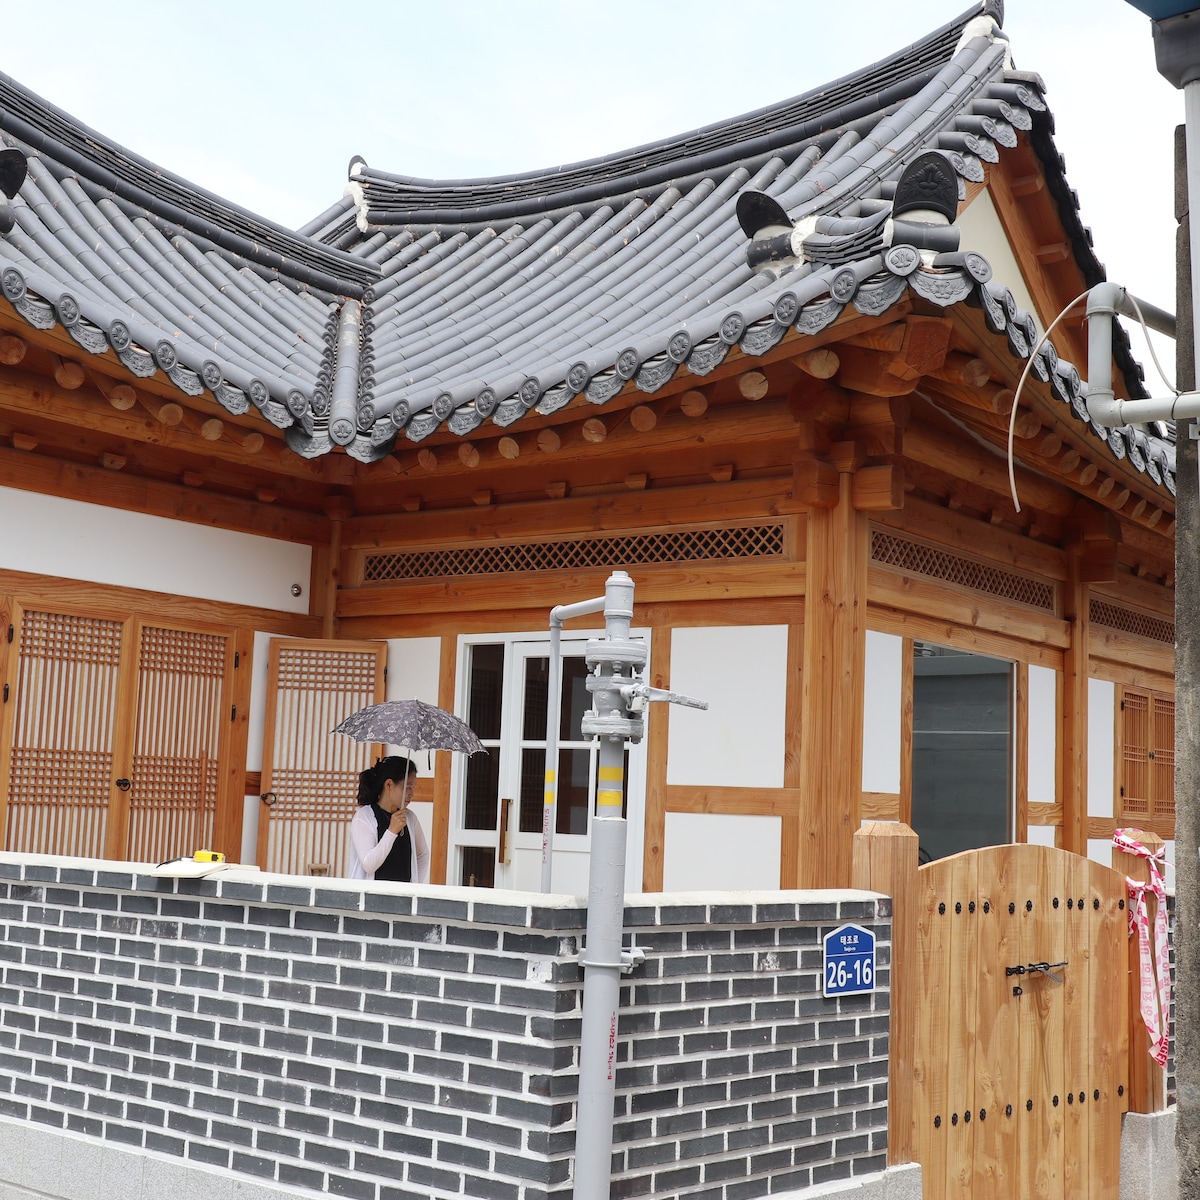 新开业的全州浪漫（ Jeonju Romantic ） 1间客房:)干净的韩屋客房位于韩屋村（ Hanok Village ）主干道上